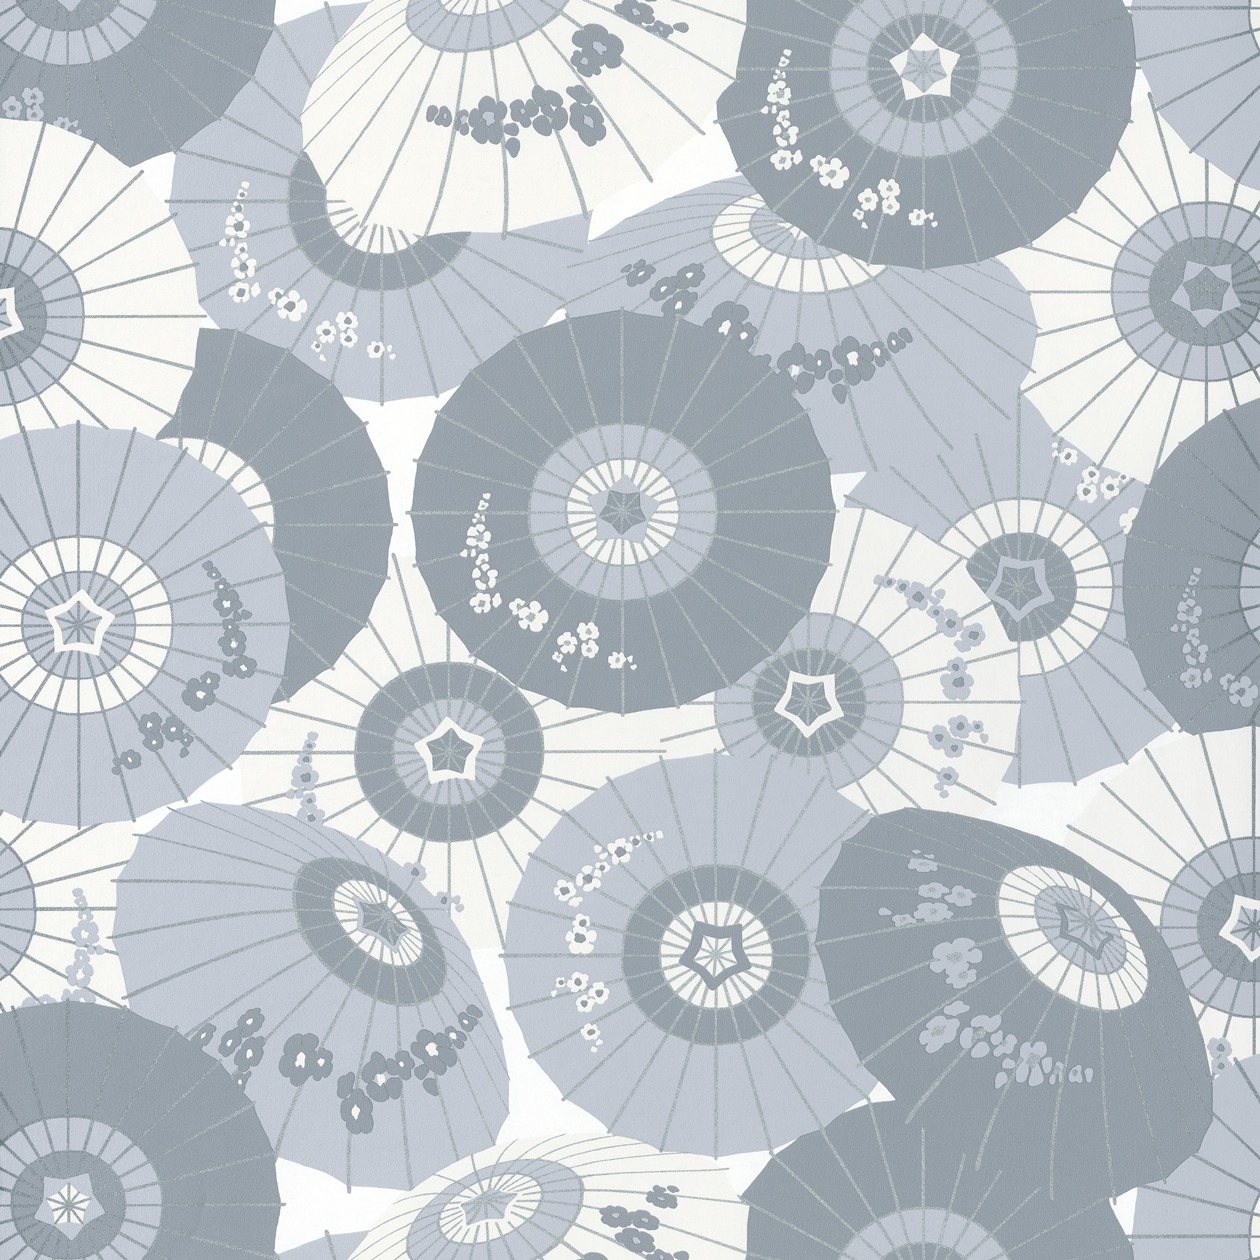 Halványkék japán stílusú tapéta napernyő mintával